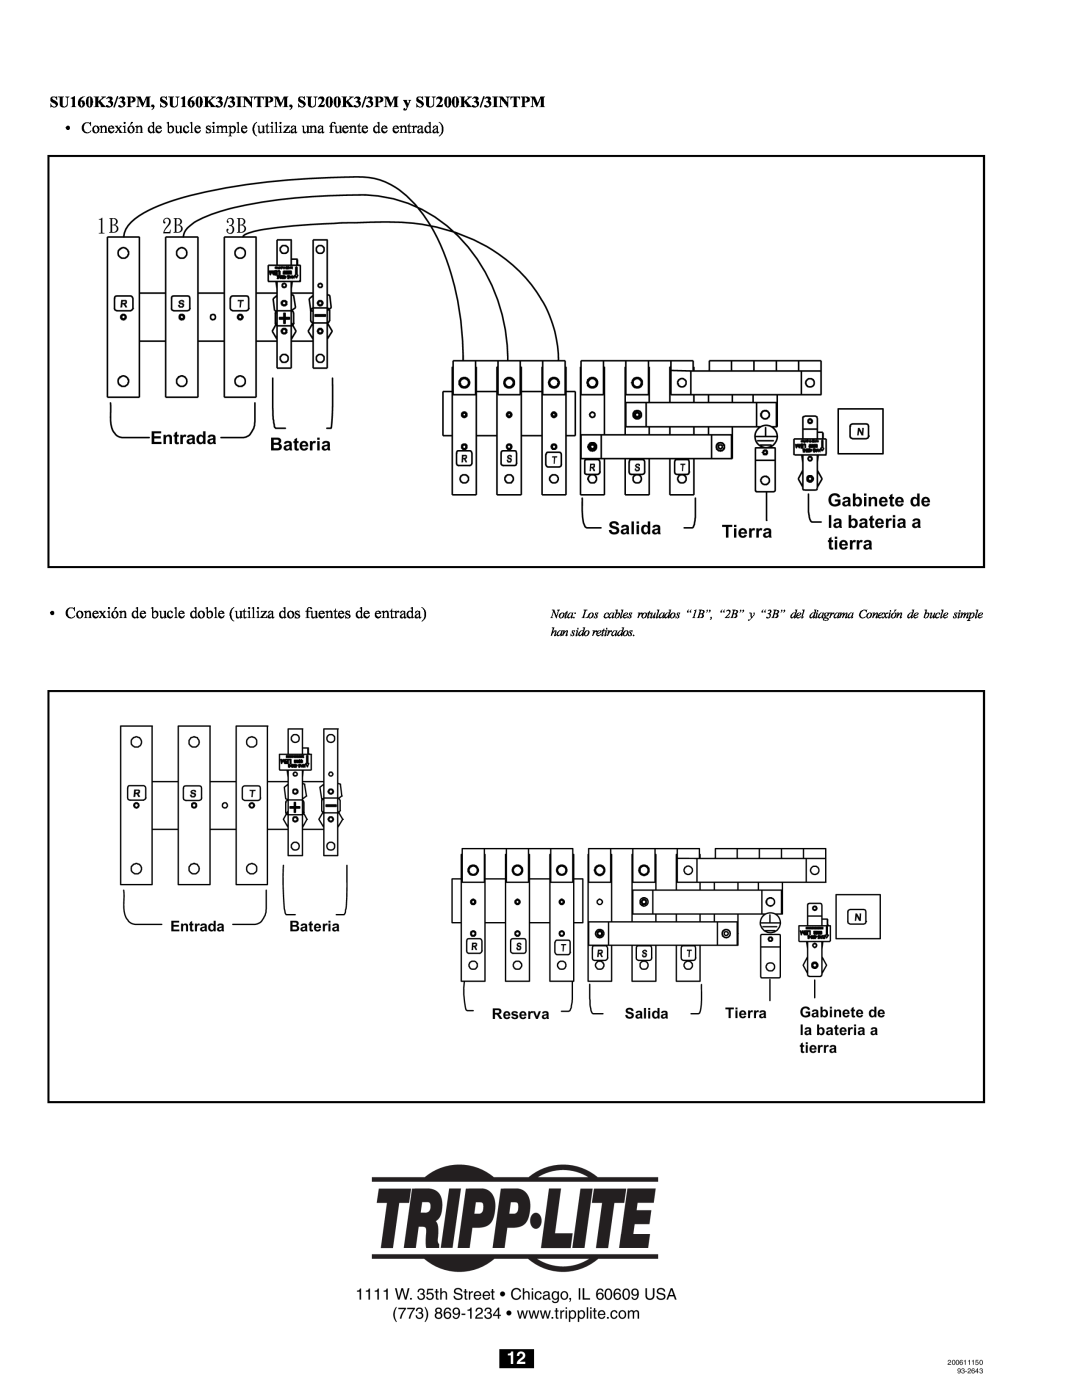 Tripp Lite 240/415V AC Entrada Bateria Gabinete de Salida Tierra la bateria a tierra, Reserva, han sido retirados, 93-2643 